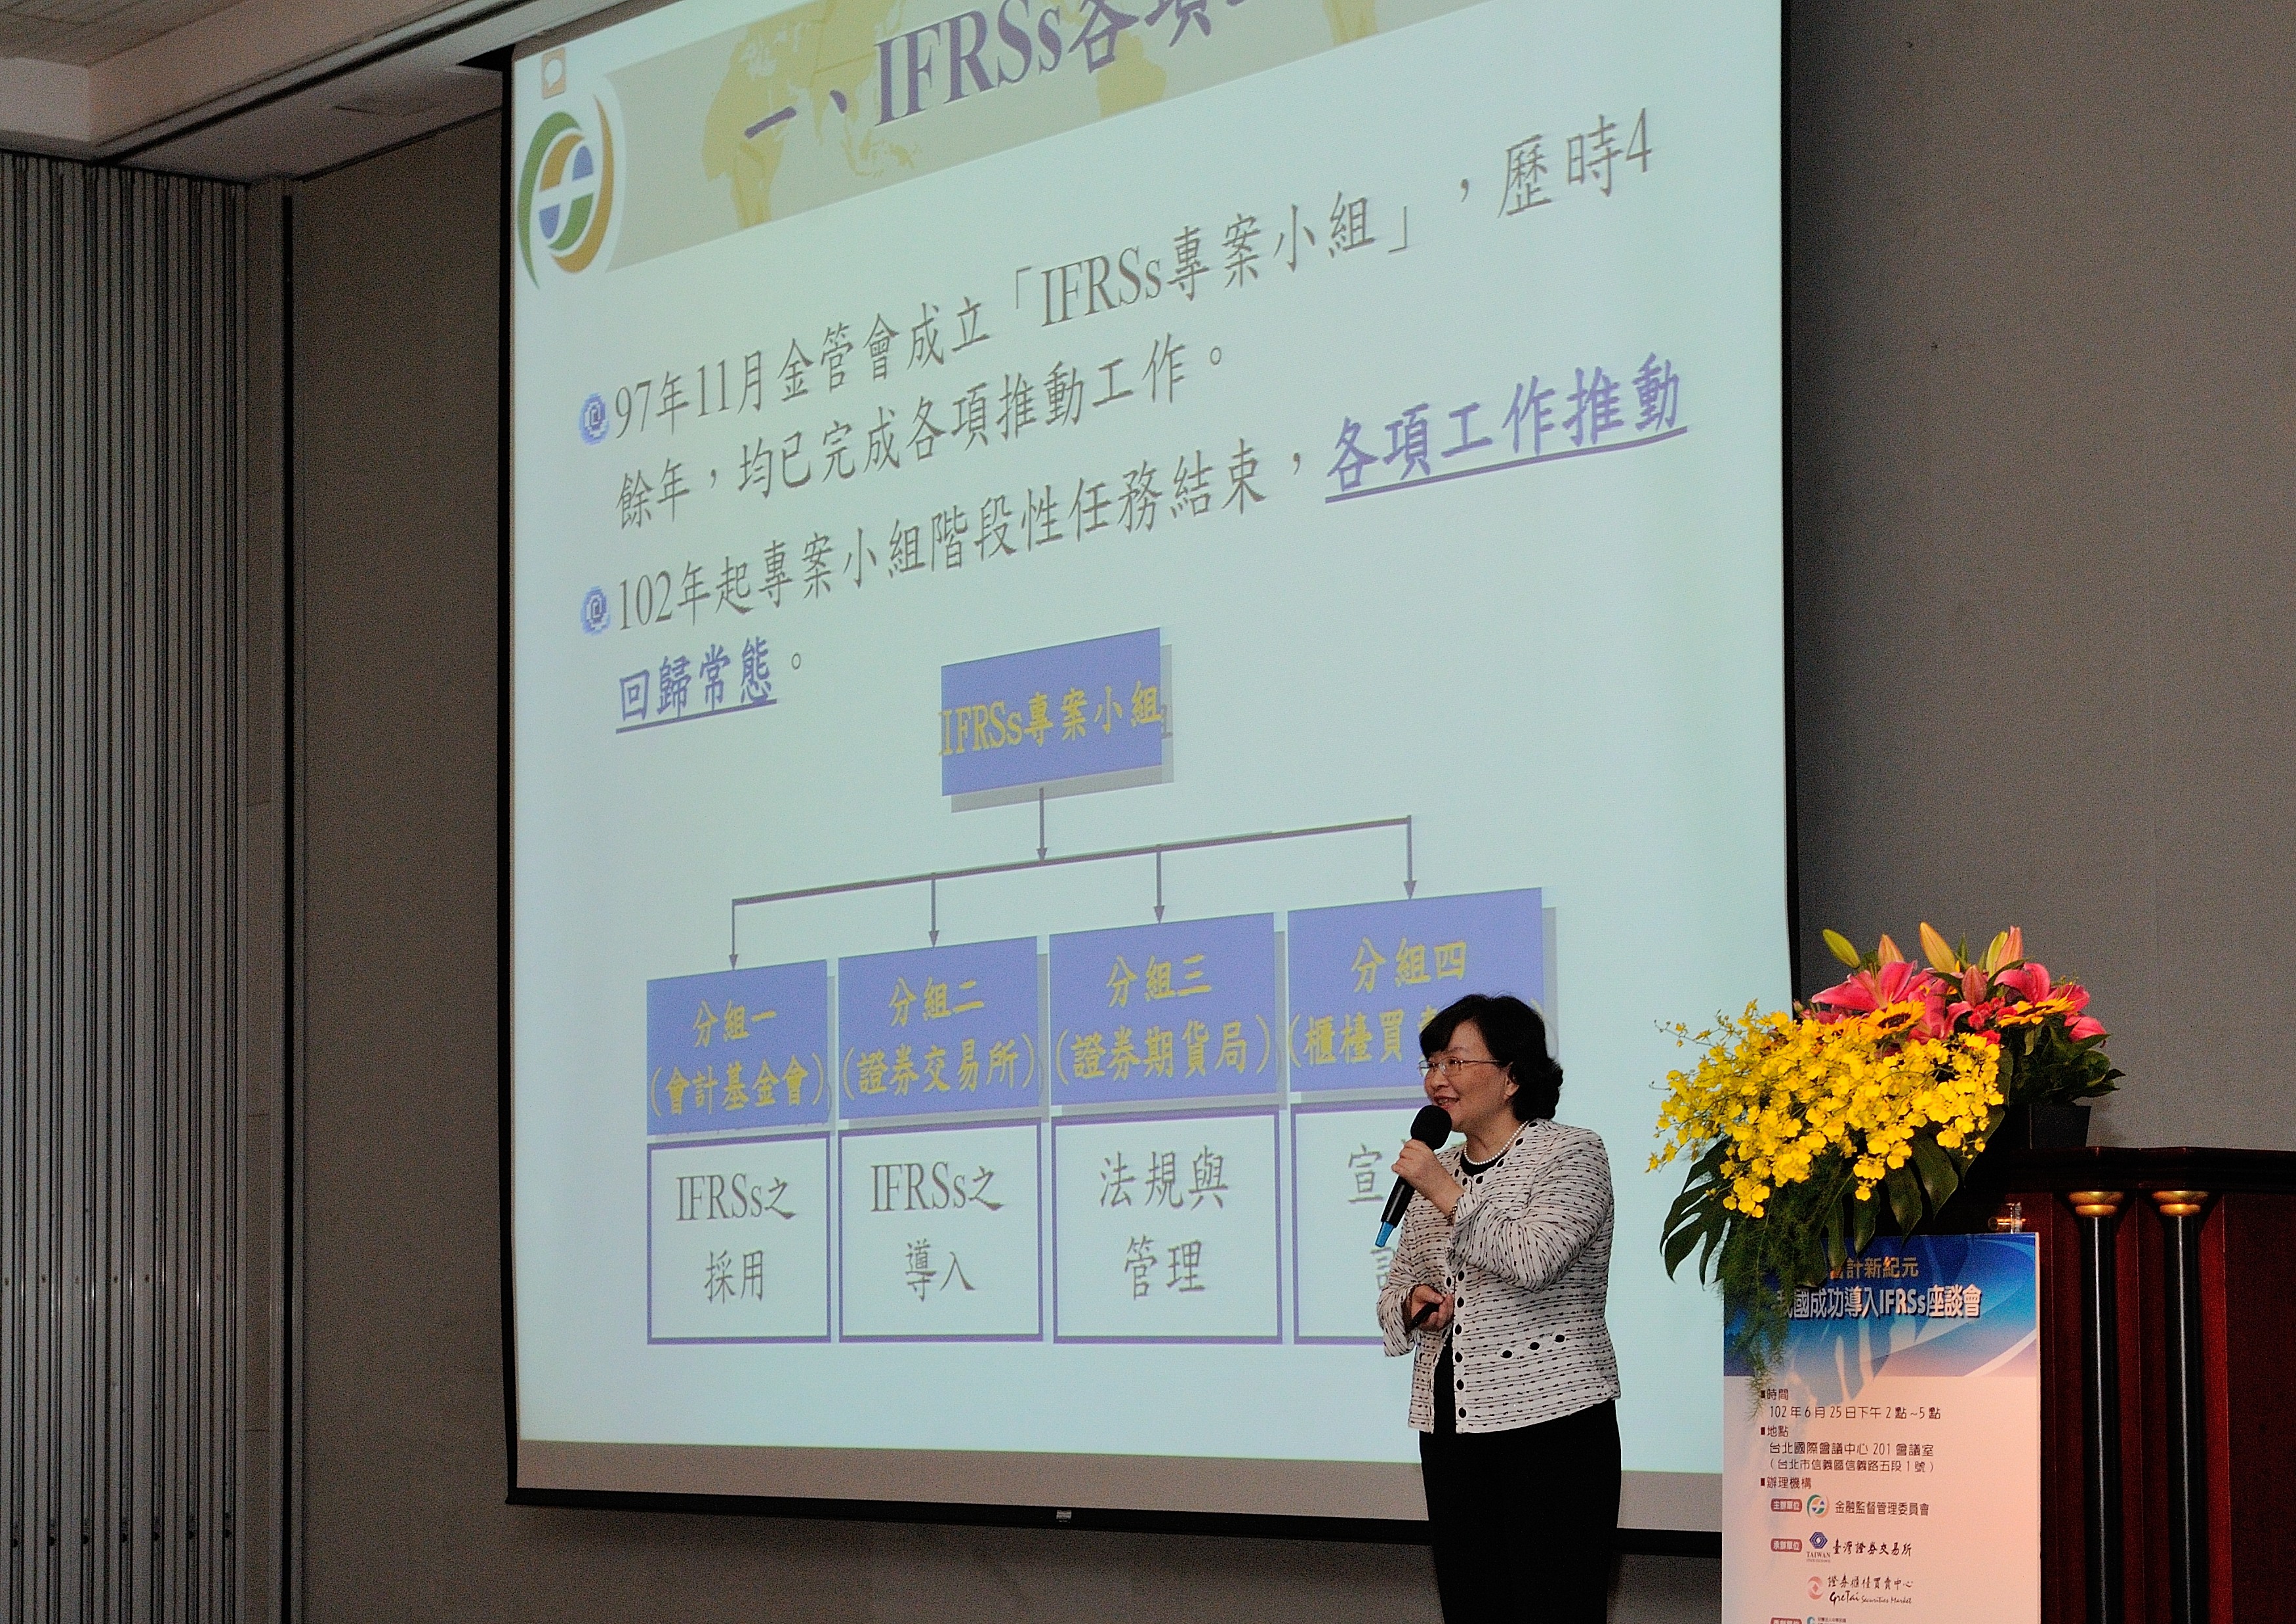 IFRSs座談會7(JPG)